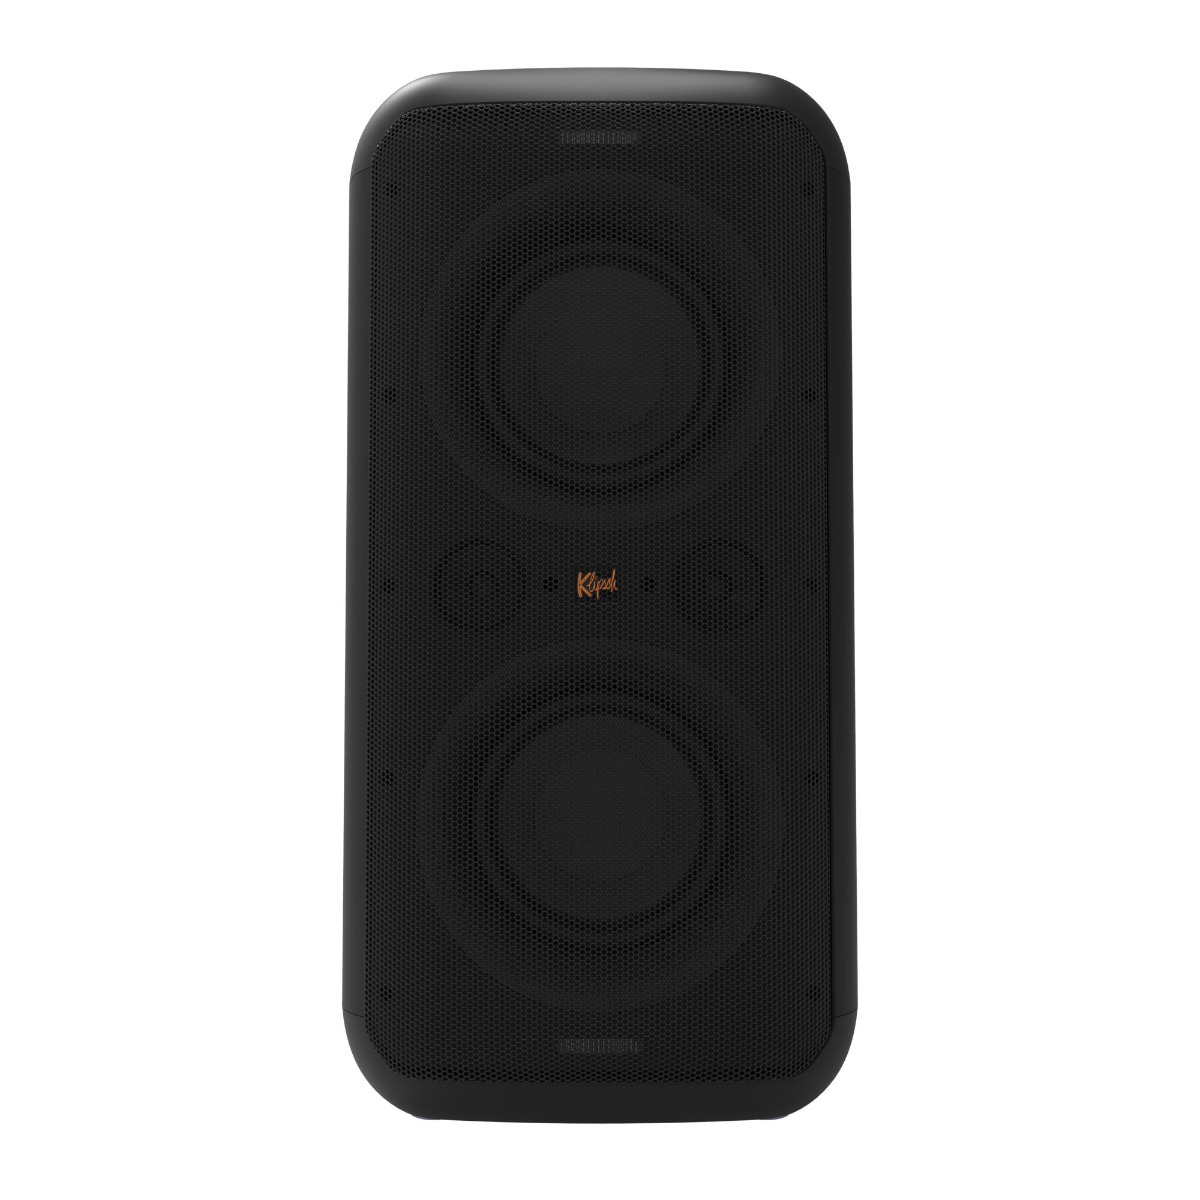 Klipsch Bluetooth speakers > Draadloze speakers > Klipsch > Draadloze speakers